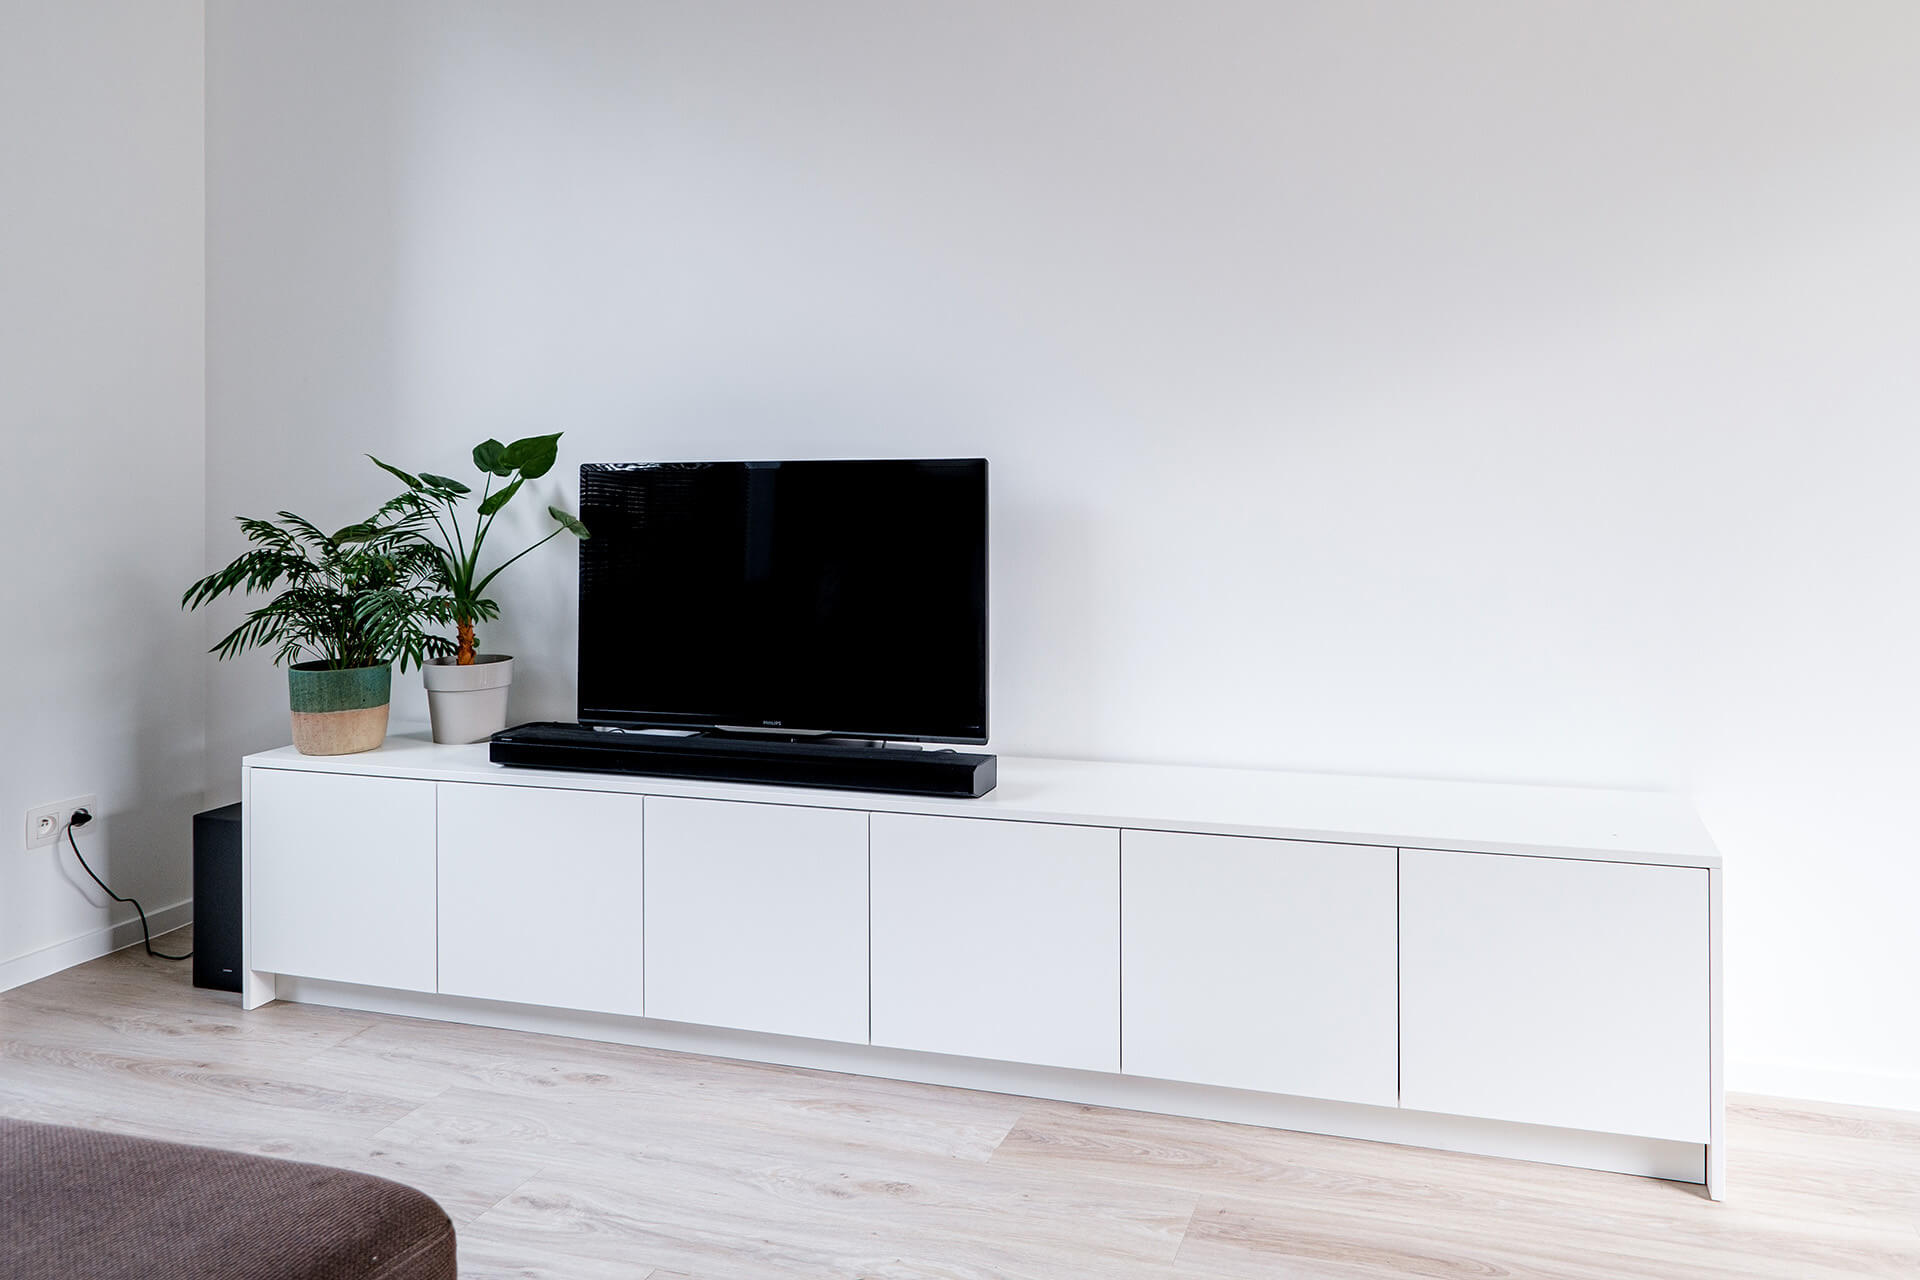 Vrijstaand TV meubel op maat, van maatkasten online